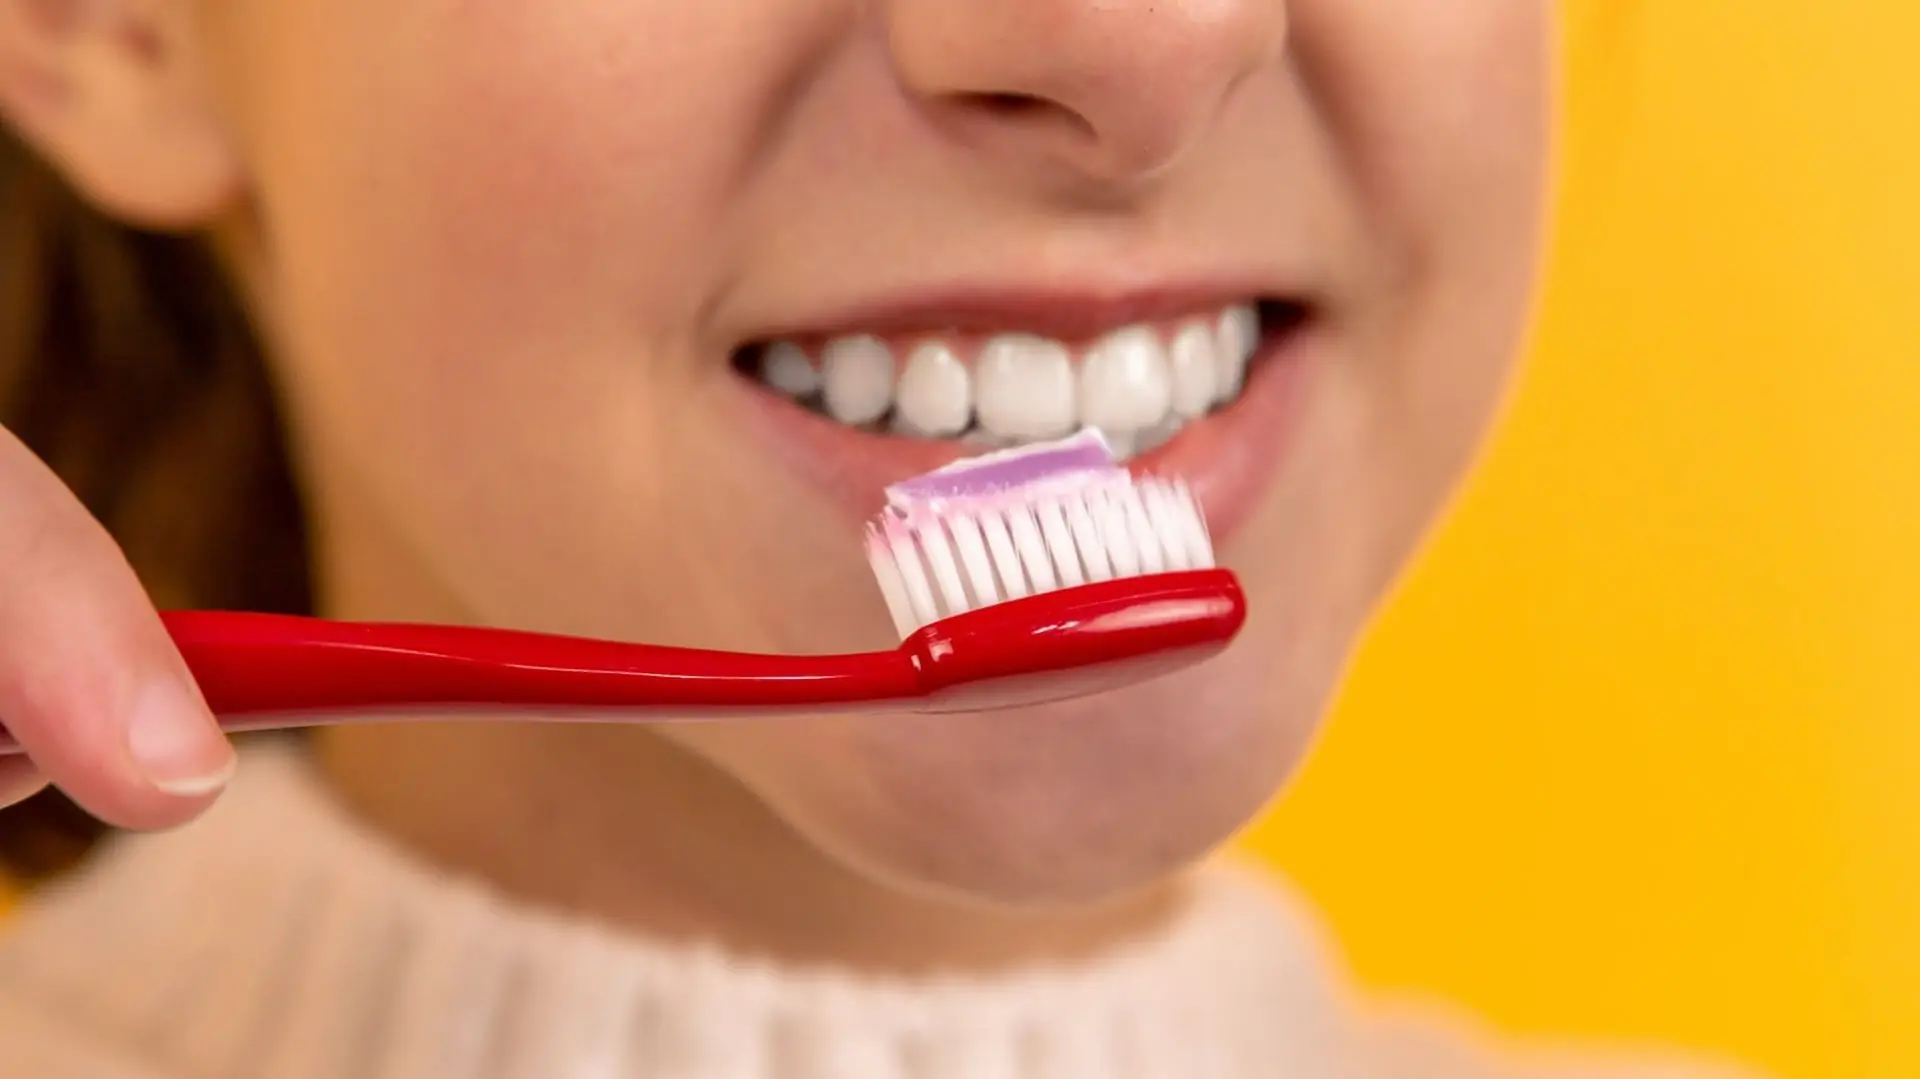 Persoon met brede lach en tandenborstel met tandenpasta op gele achtergrond. Vooraanzicht.
